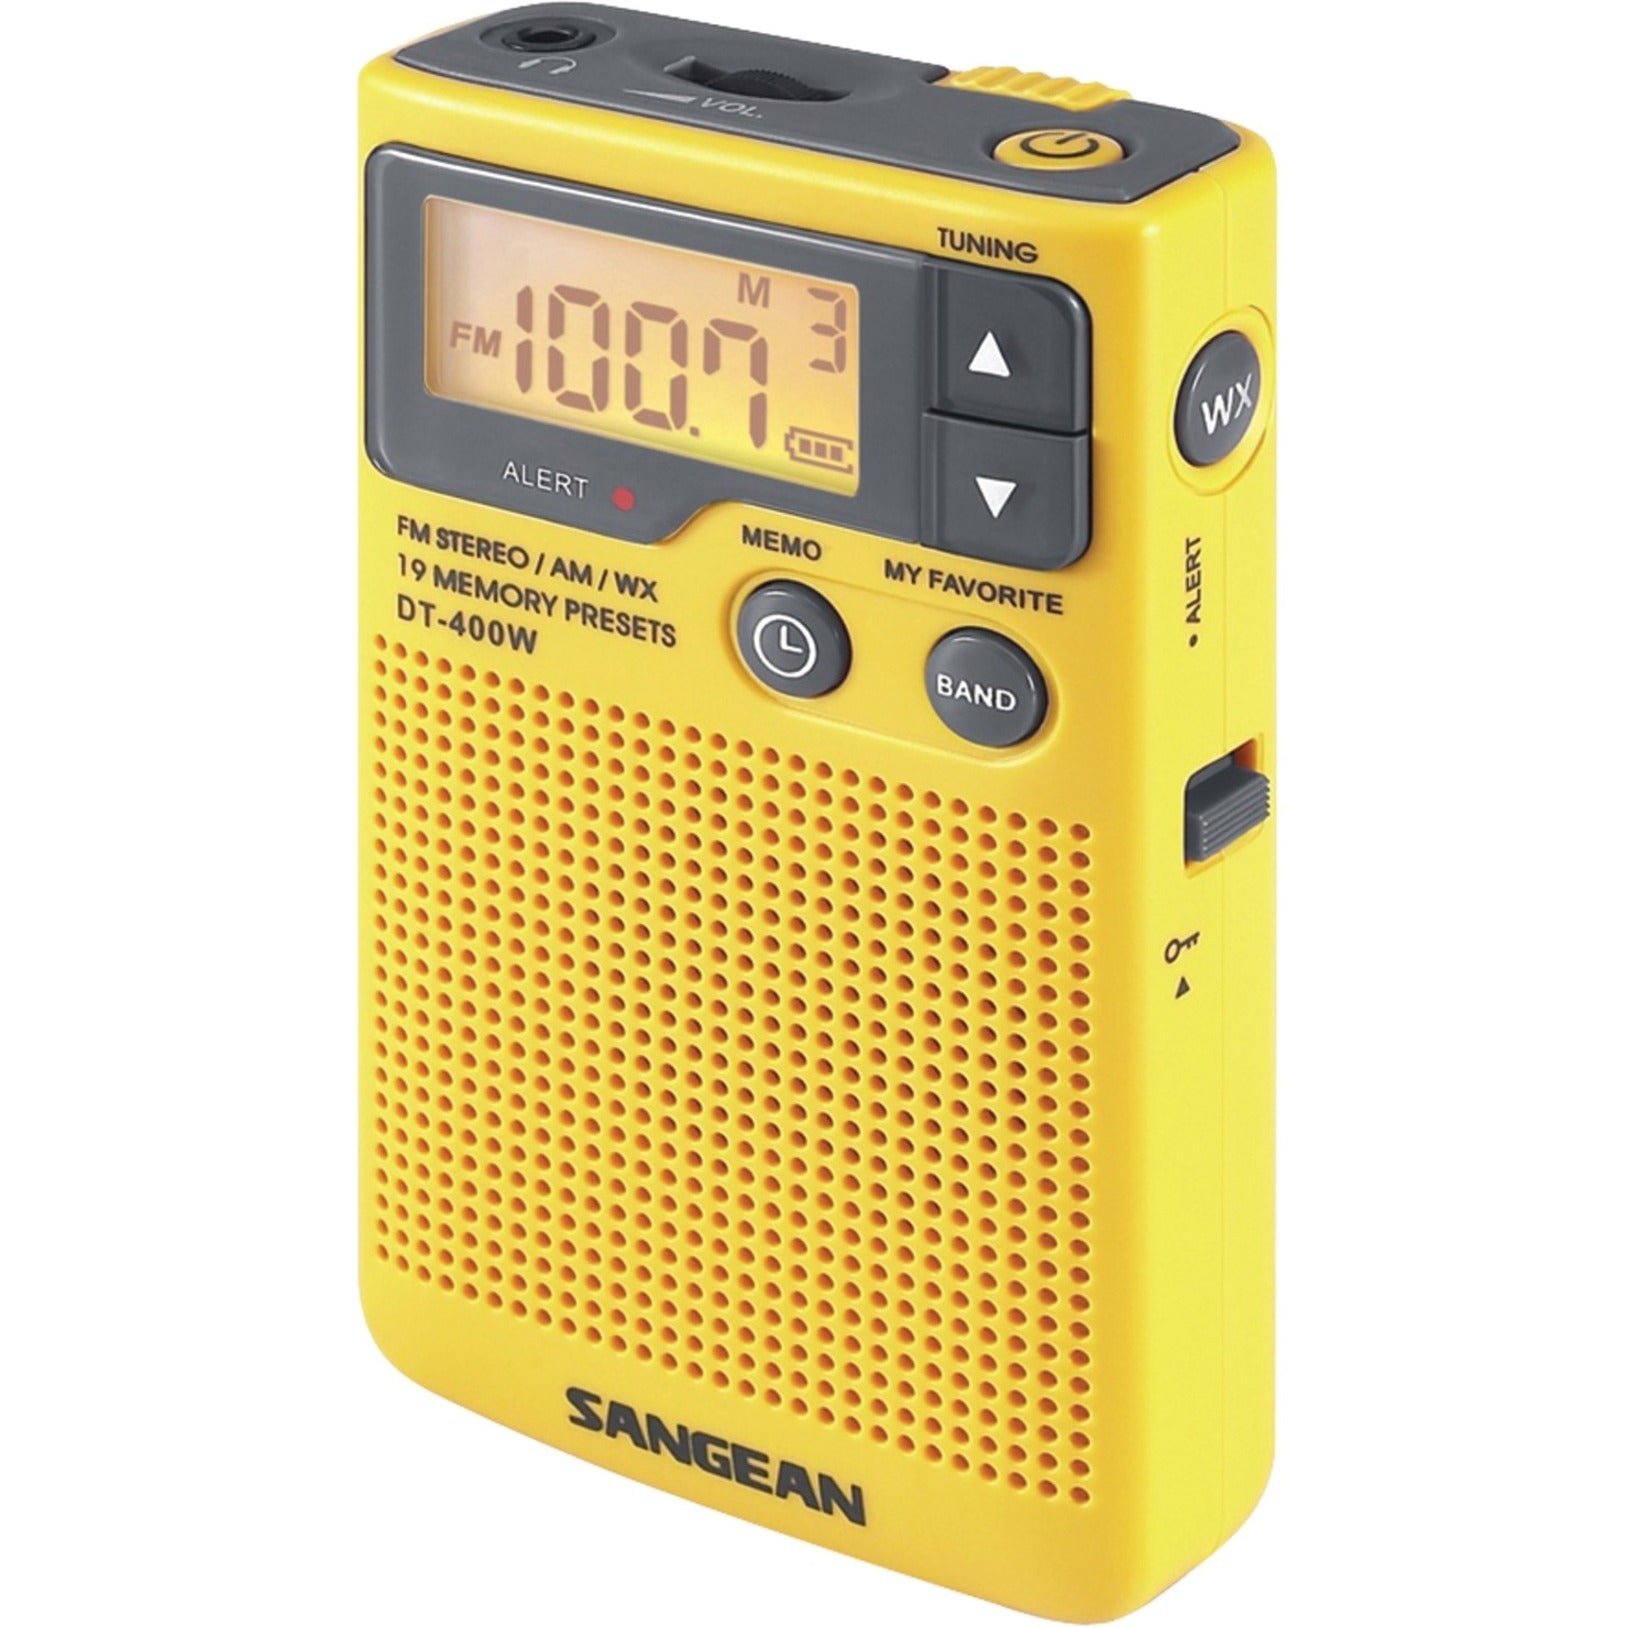 Best Buy: Sangean AM/FM Pocket Radio Black DT-200X